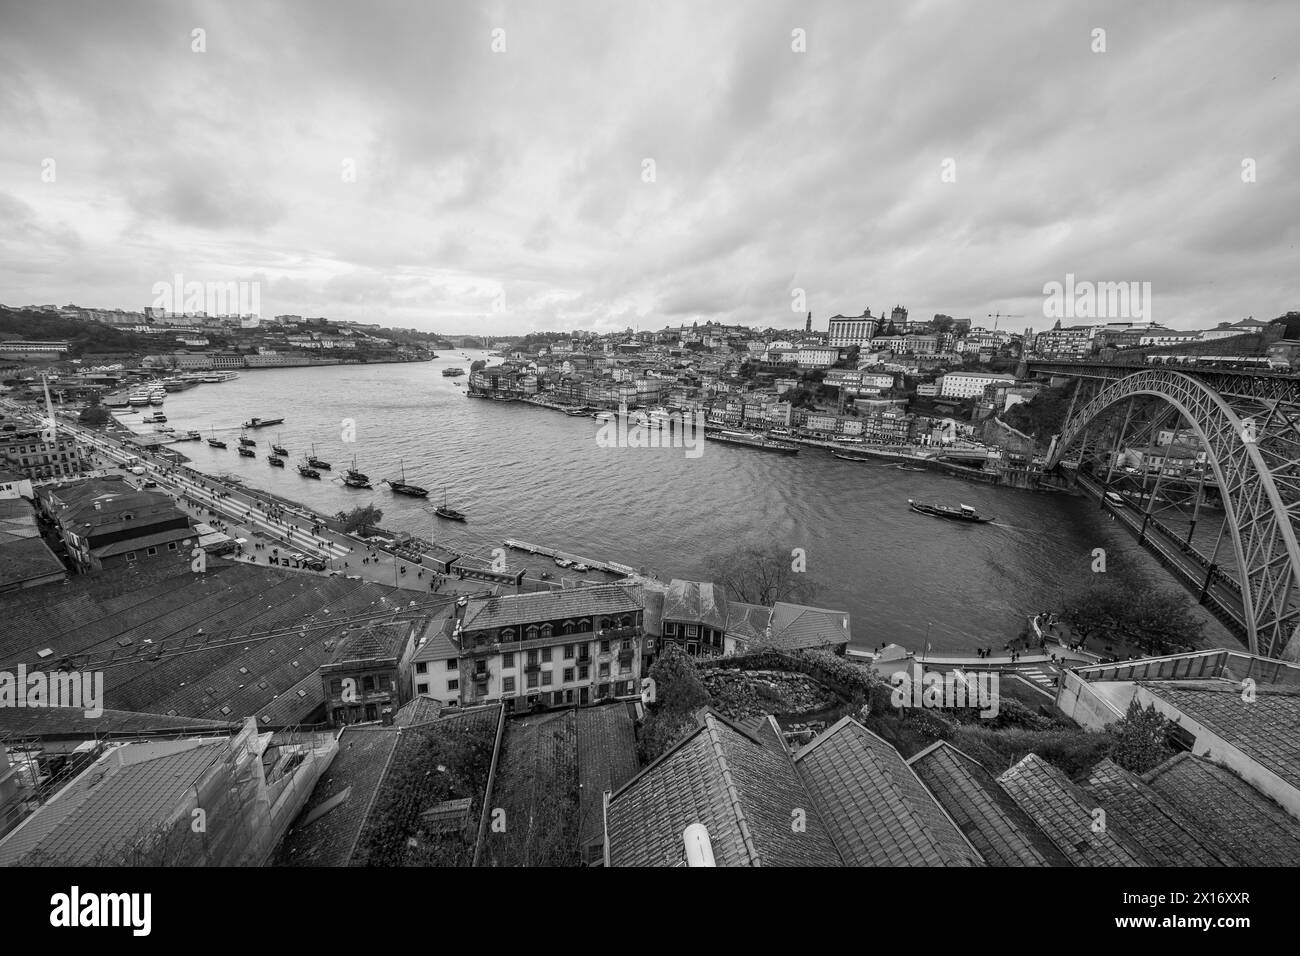 Blick auf die Luis I-Brücke, eine Doppelstockbrücke mit Metallbogen, die den Fluss Douro zwischen den Städten Porto und Vila Nova de Gaia überspannt, 15. April 202 Stockfoto